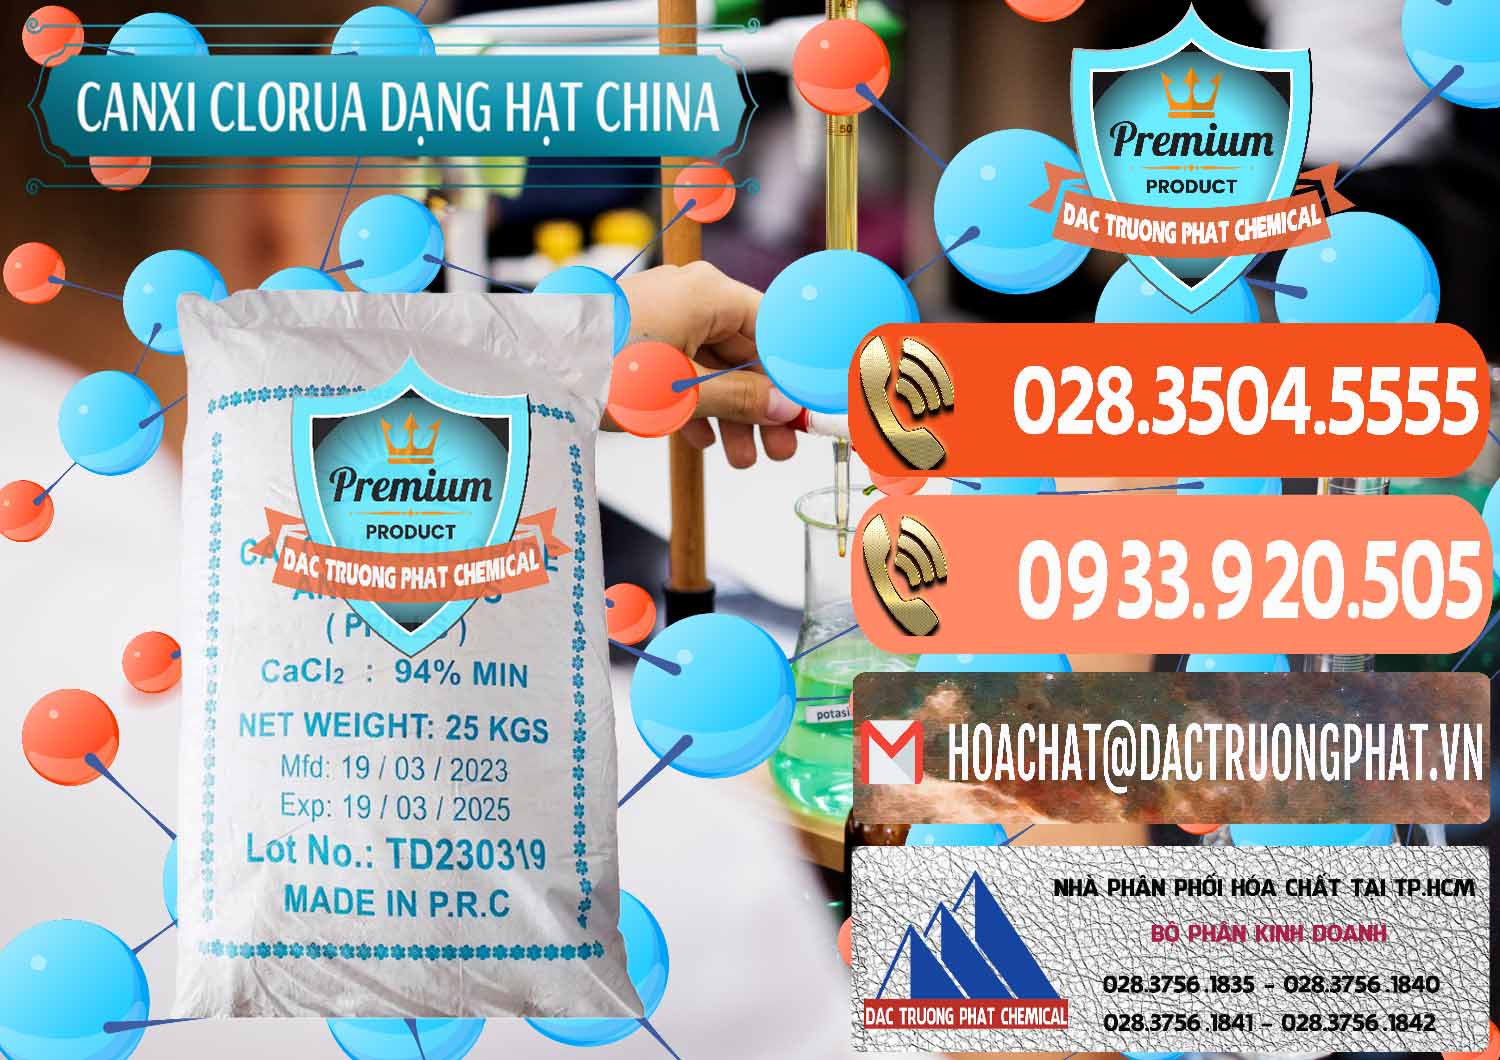 Đơn vị chuyên bán - cung ứng CaCl2 – Canxi Clorua 94% Dạng Hạt Trung Quốc China - 0373 - Cty phân phối và bán hóa chất tại TP.HCM - hoachatmientay.com